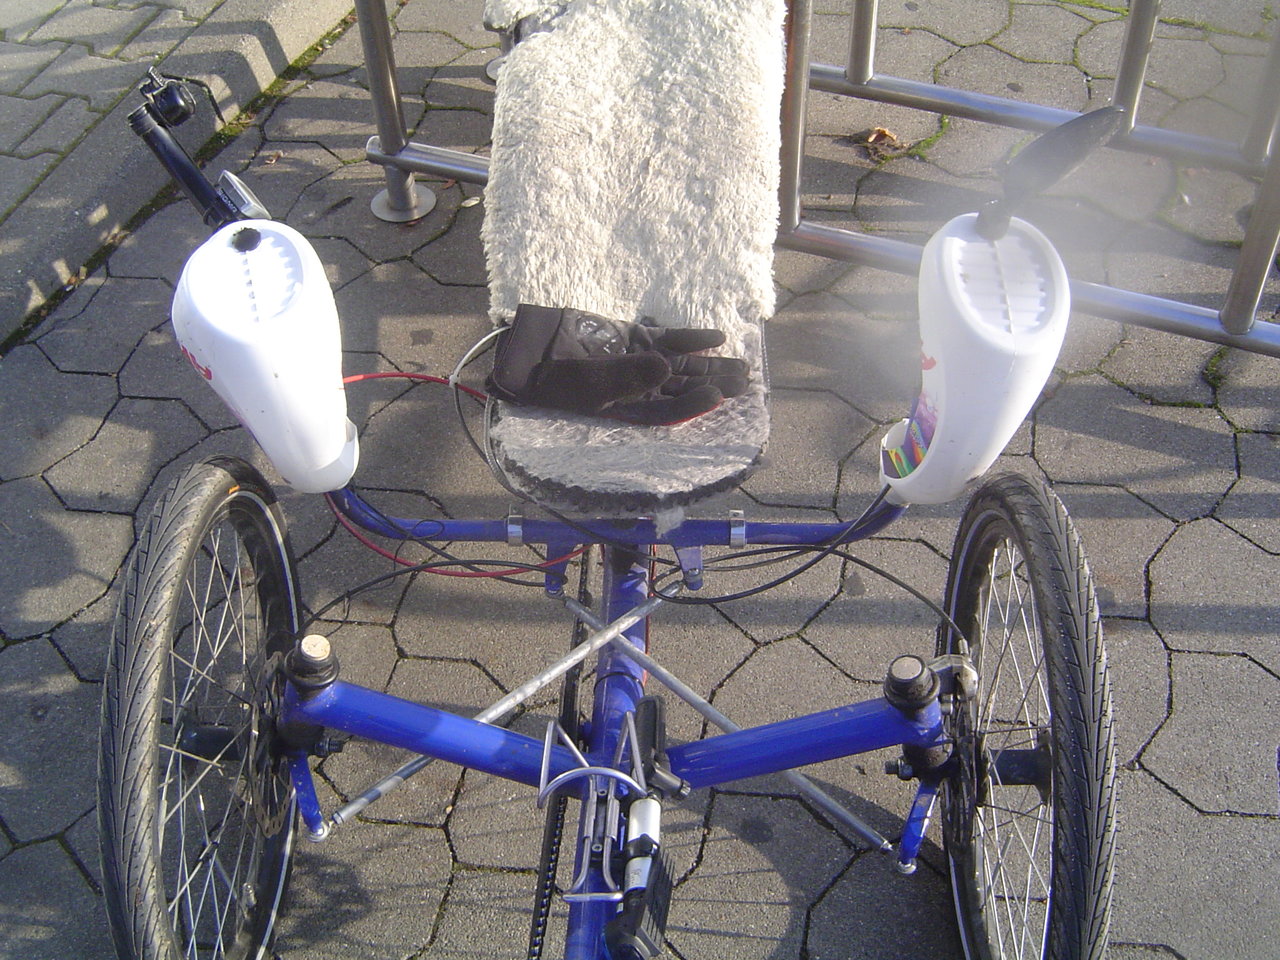 DIY Bastelei mit Feinwaschmittelflaschen als Wind bzw. Nässe und Wäremeschutz am Trike